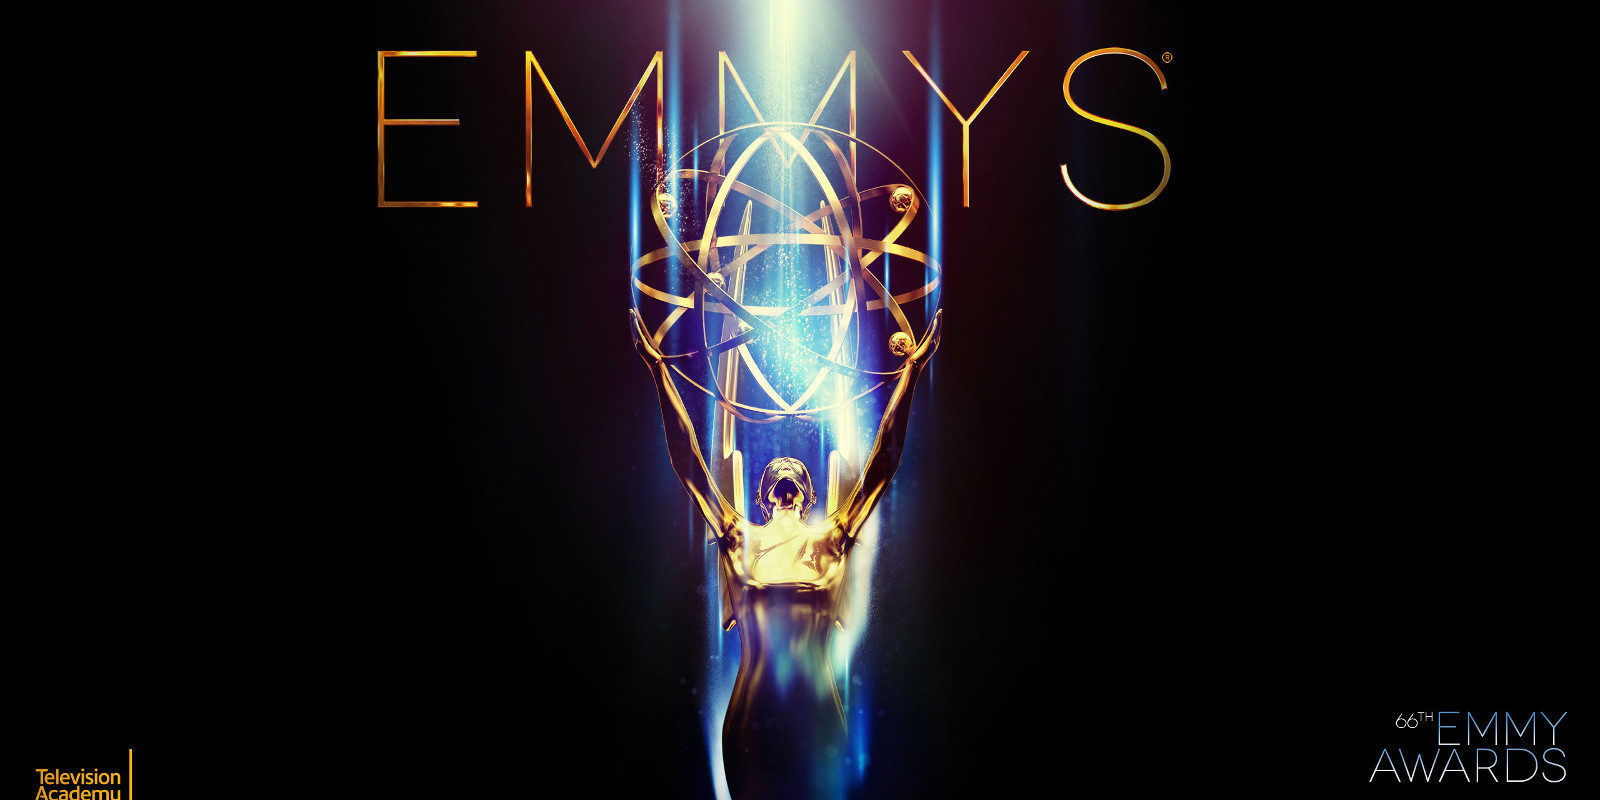 Premios Emmy 2017: Lista completa de nominados